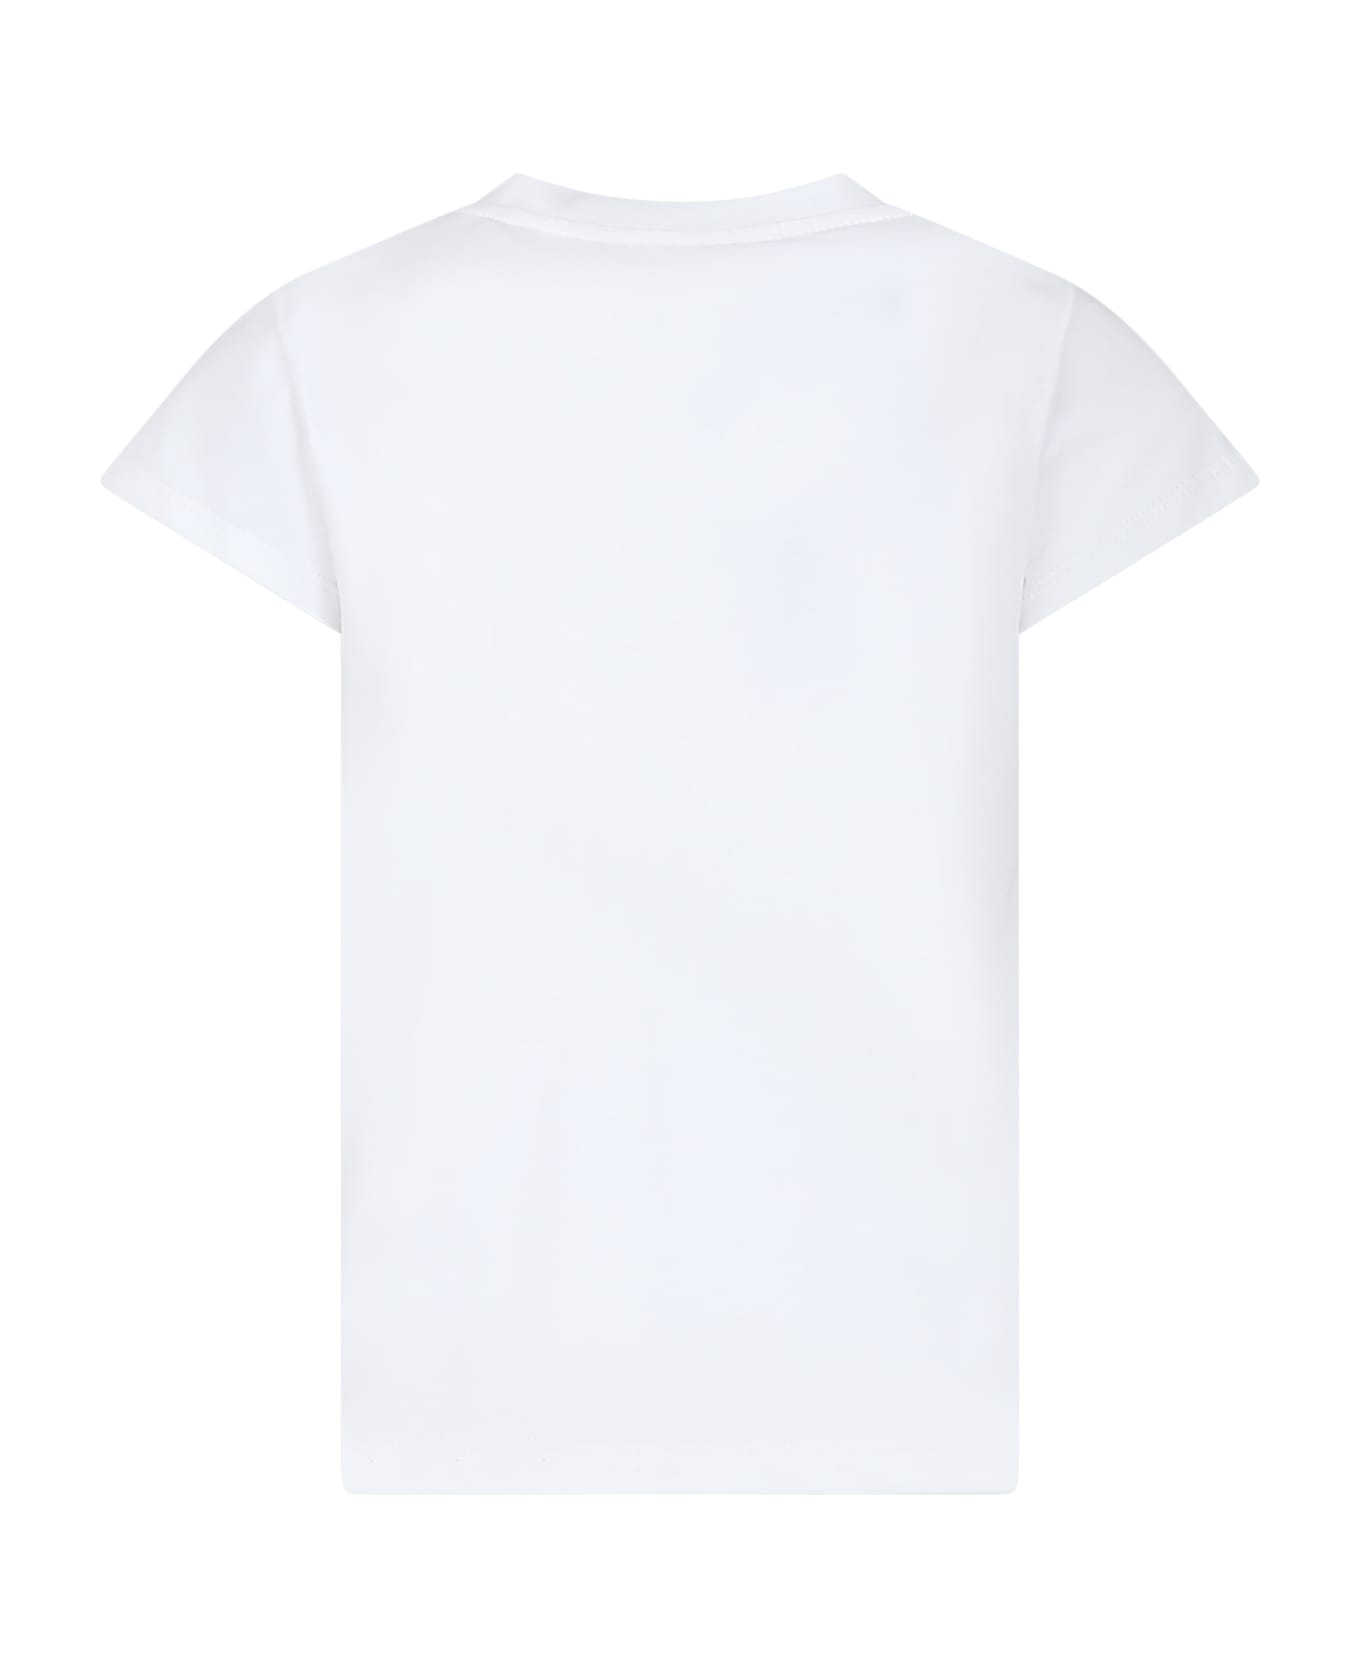 Simonetta White T-shirt For Girl - White